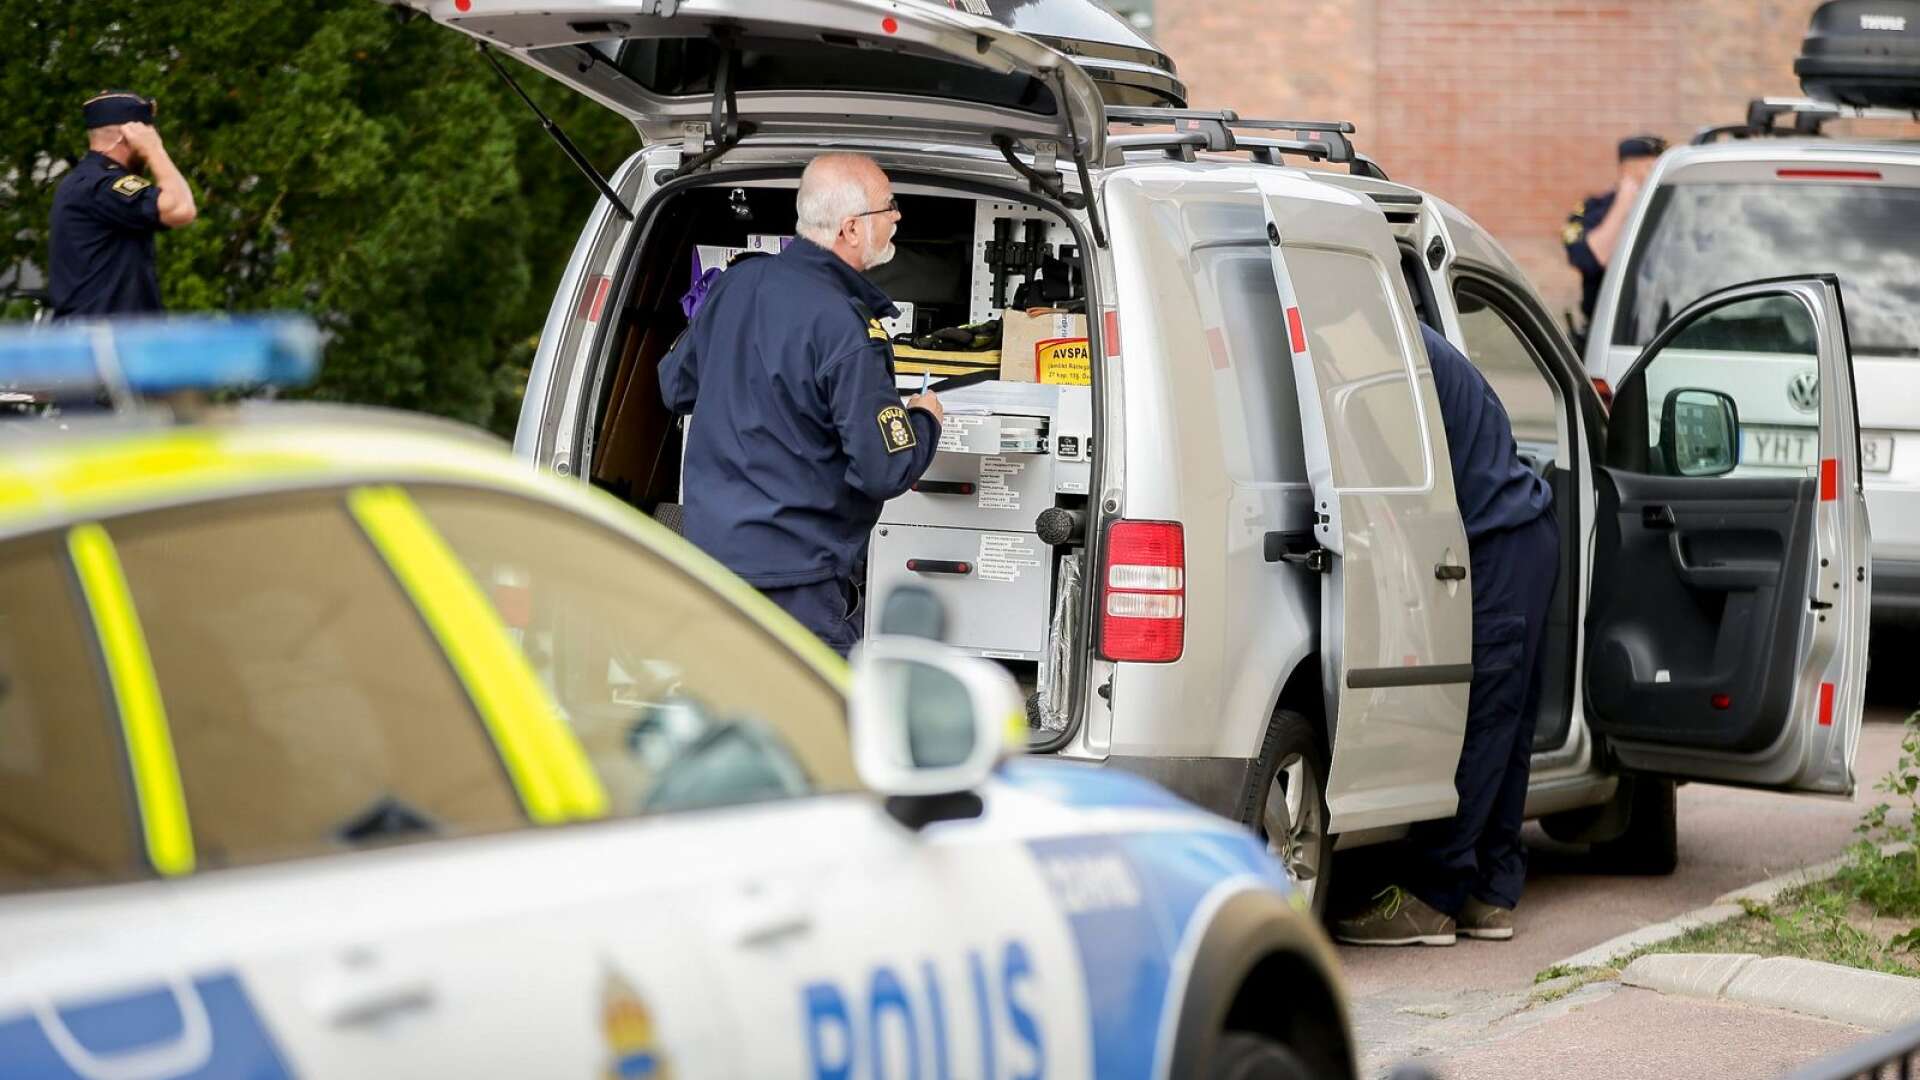 Polistekniker ute och letar spår efter skjutningarna i Karlstad.